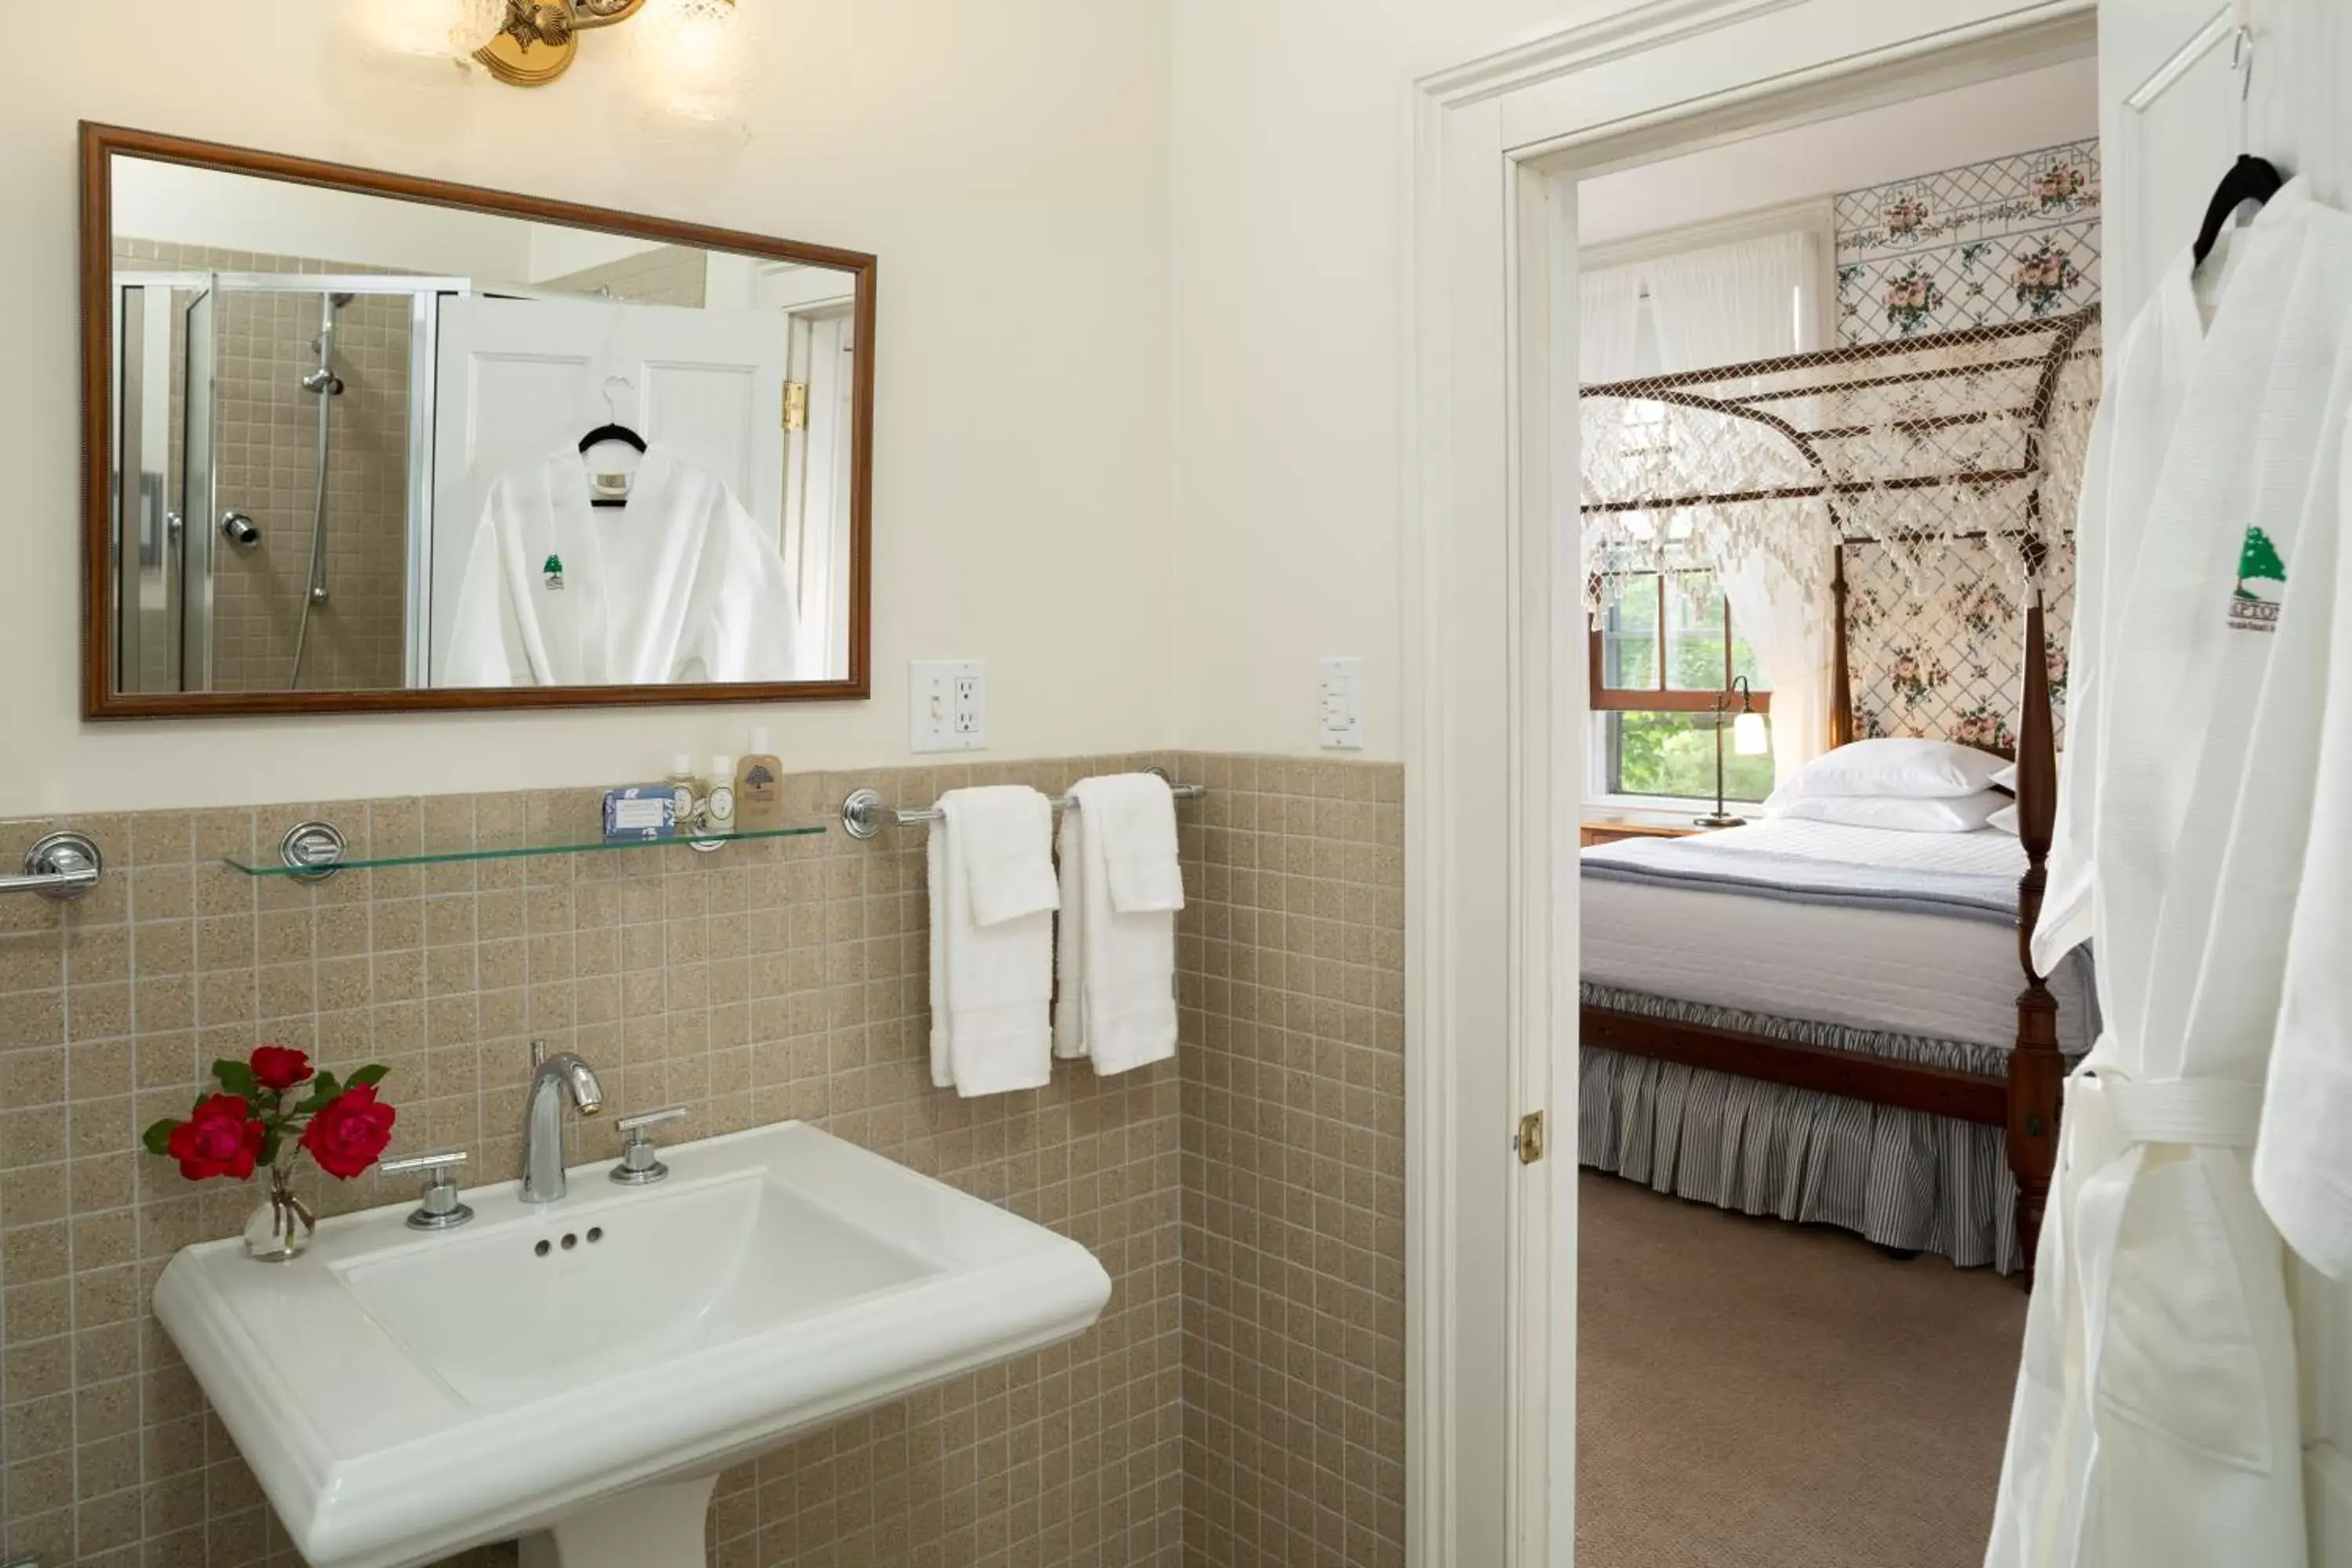 Bathroom in Brampton Bed and Breakfast Inn